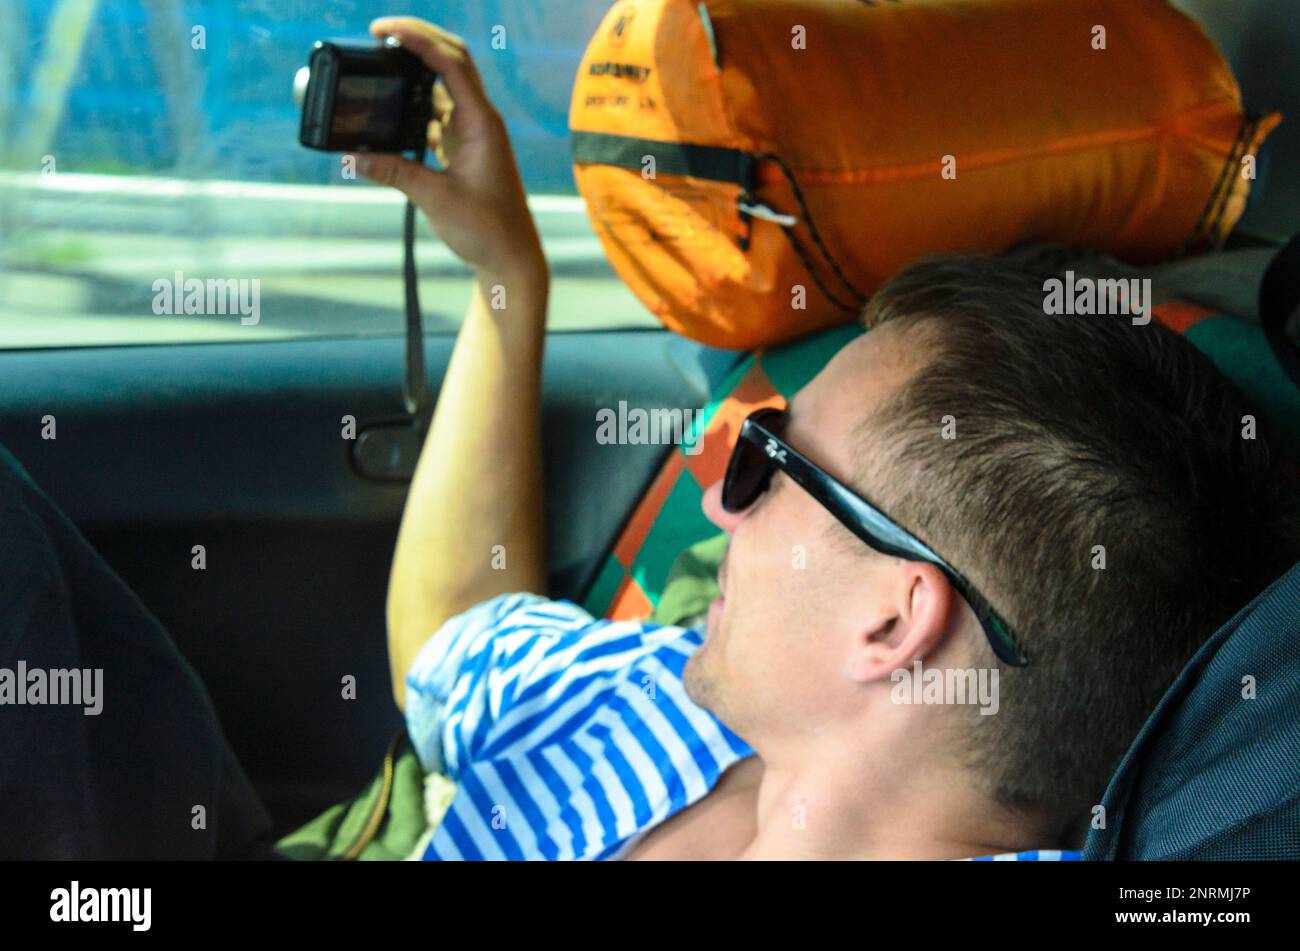 Un homme qui se repose dans des lunettes sombres est photographié à travers le verre d'une voiture dans le siège arrière parmi les choses touristiques. Banque D'Images